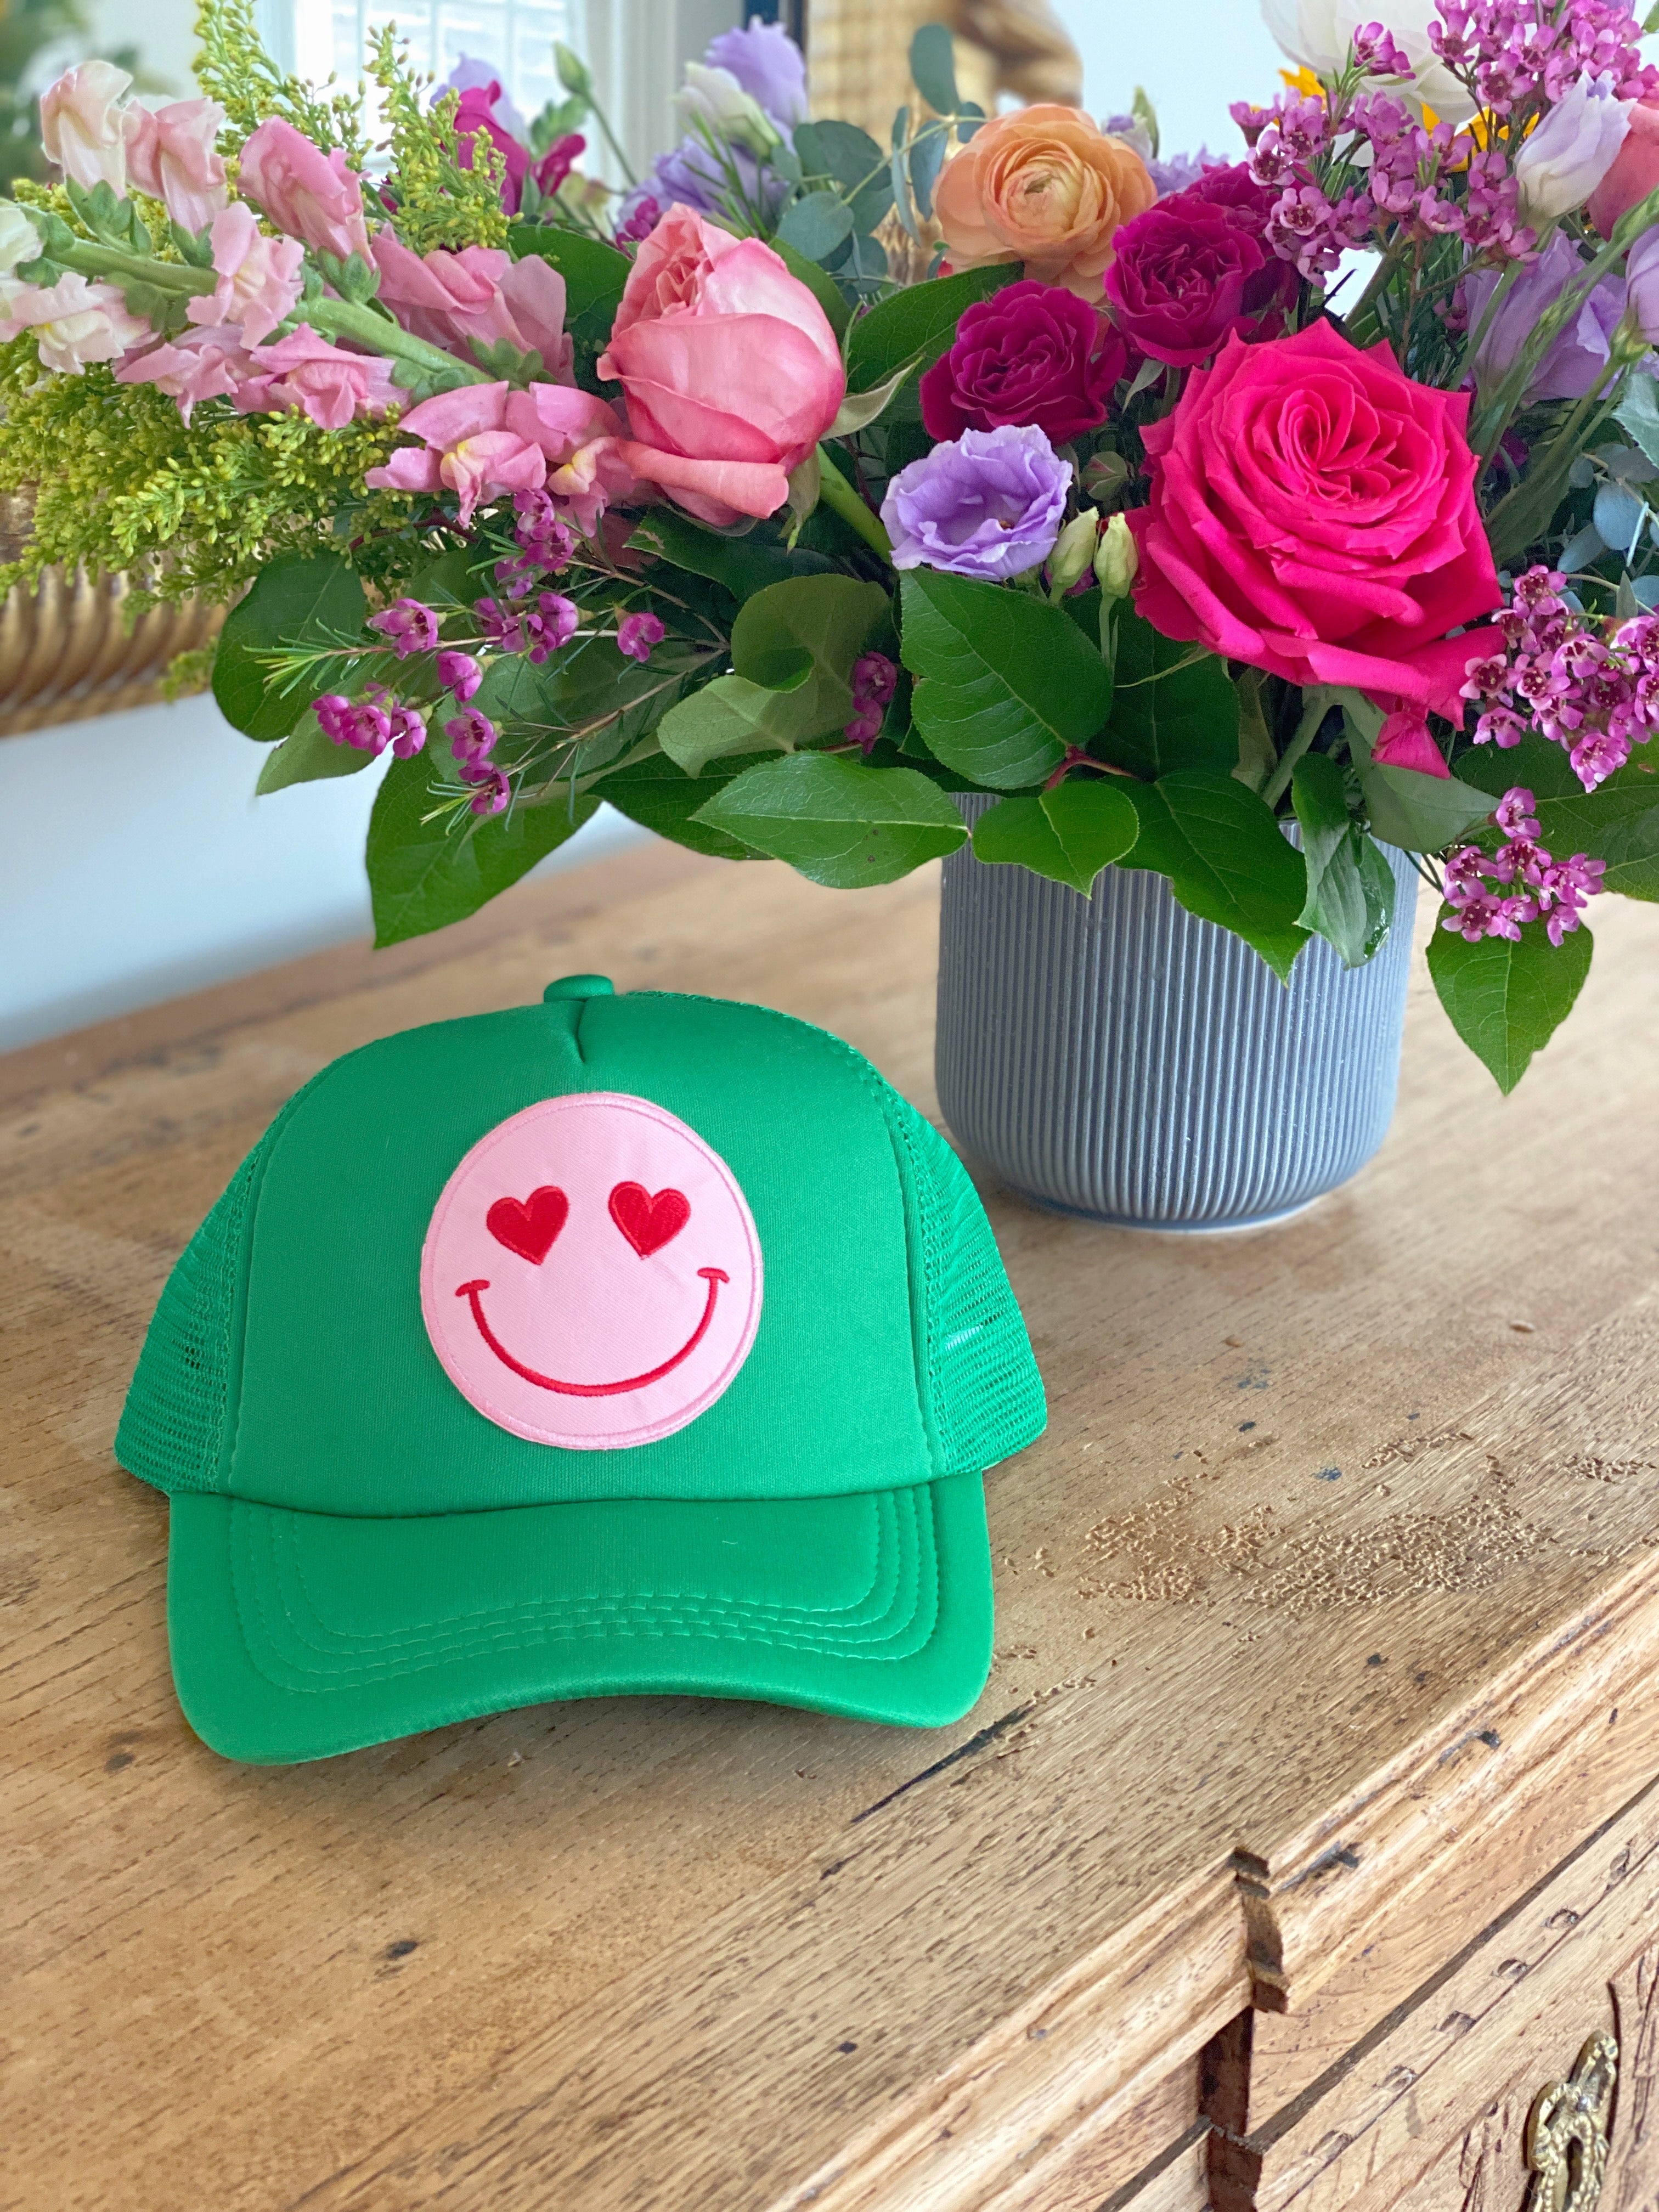 Happy Heart Trucker Hat by Confettees - Kelly Green